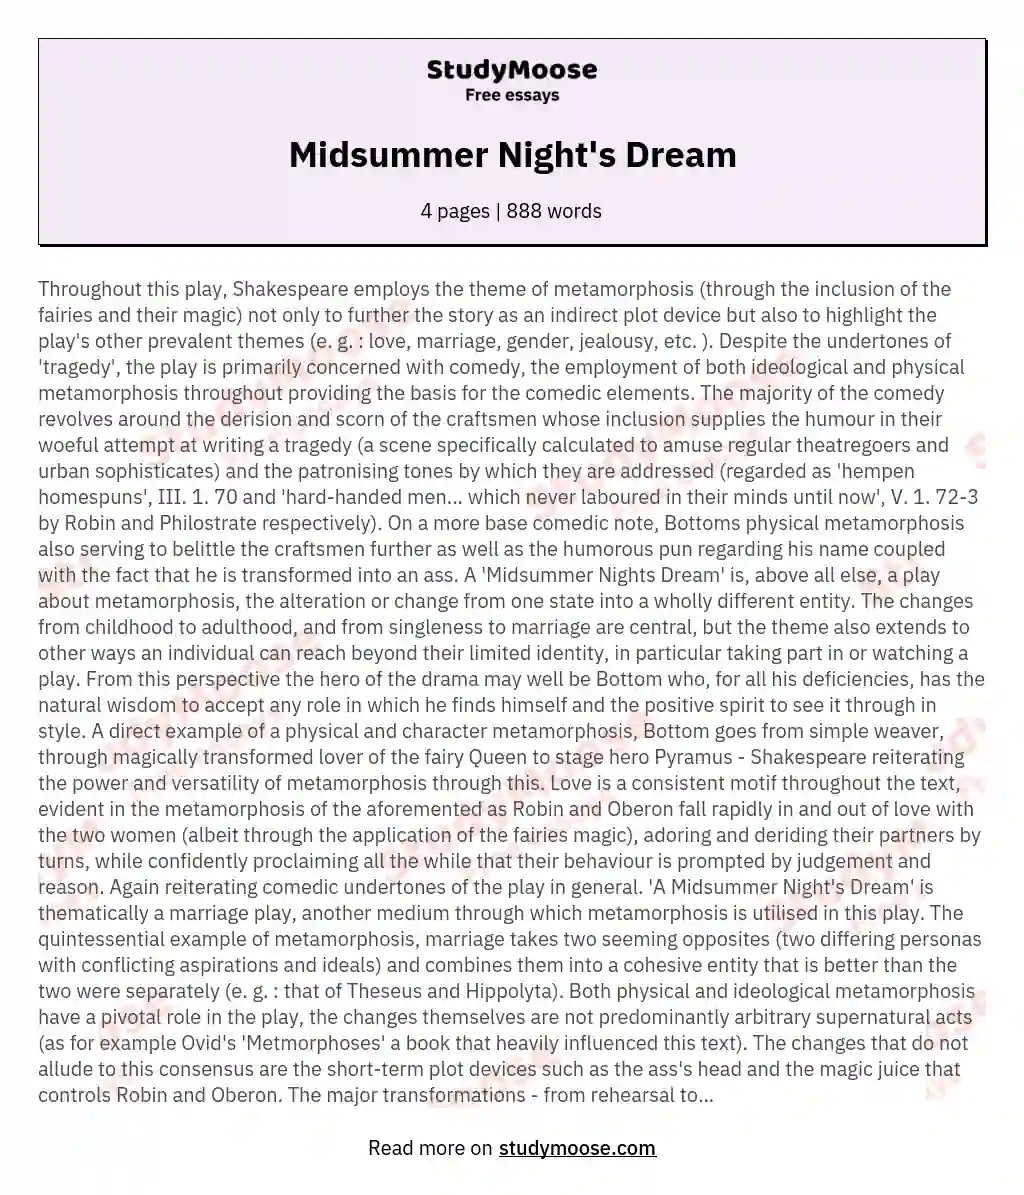 Midsummer Night's Dream essay